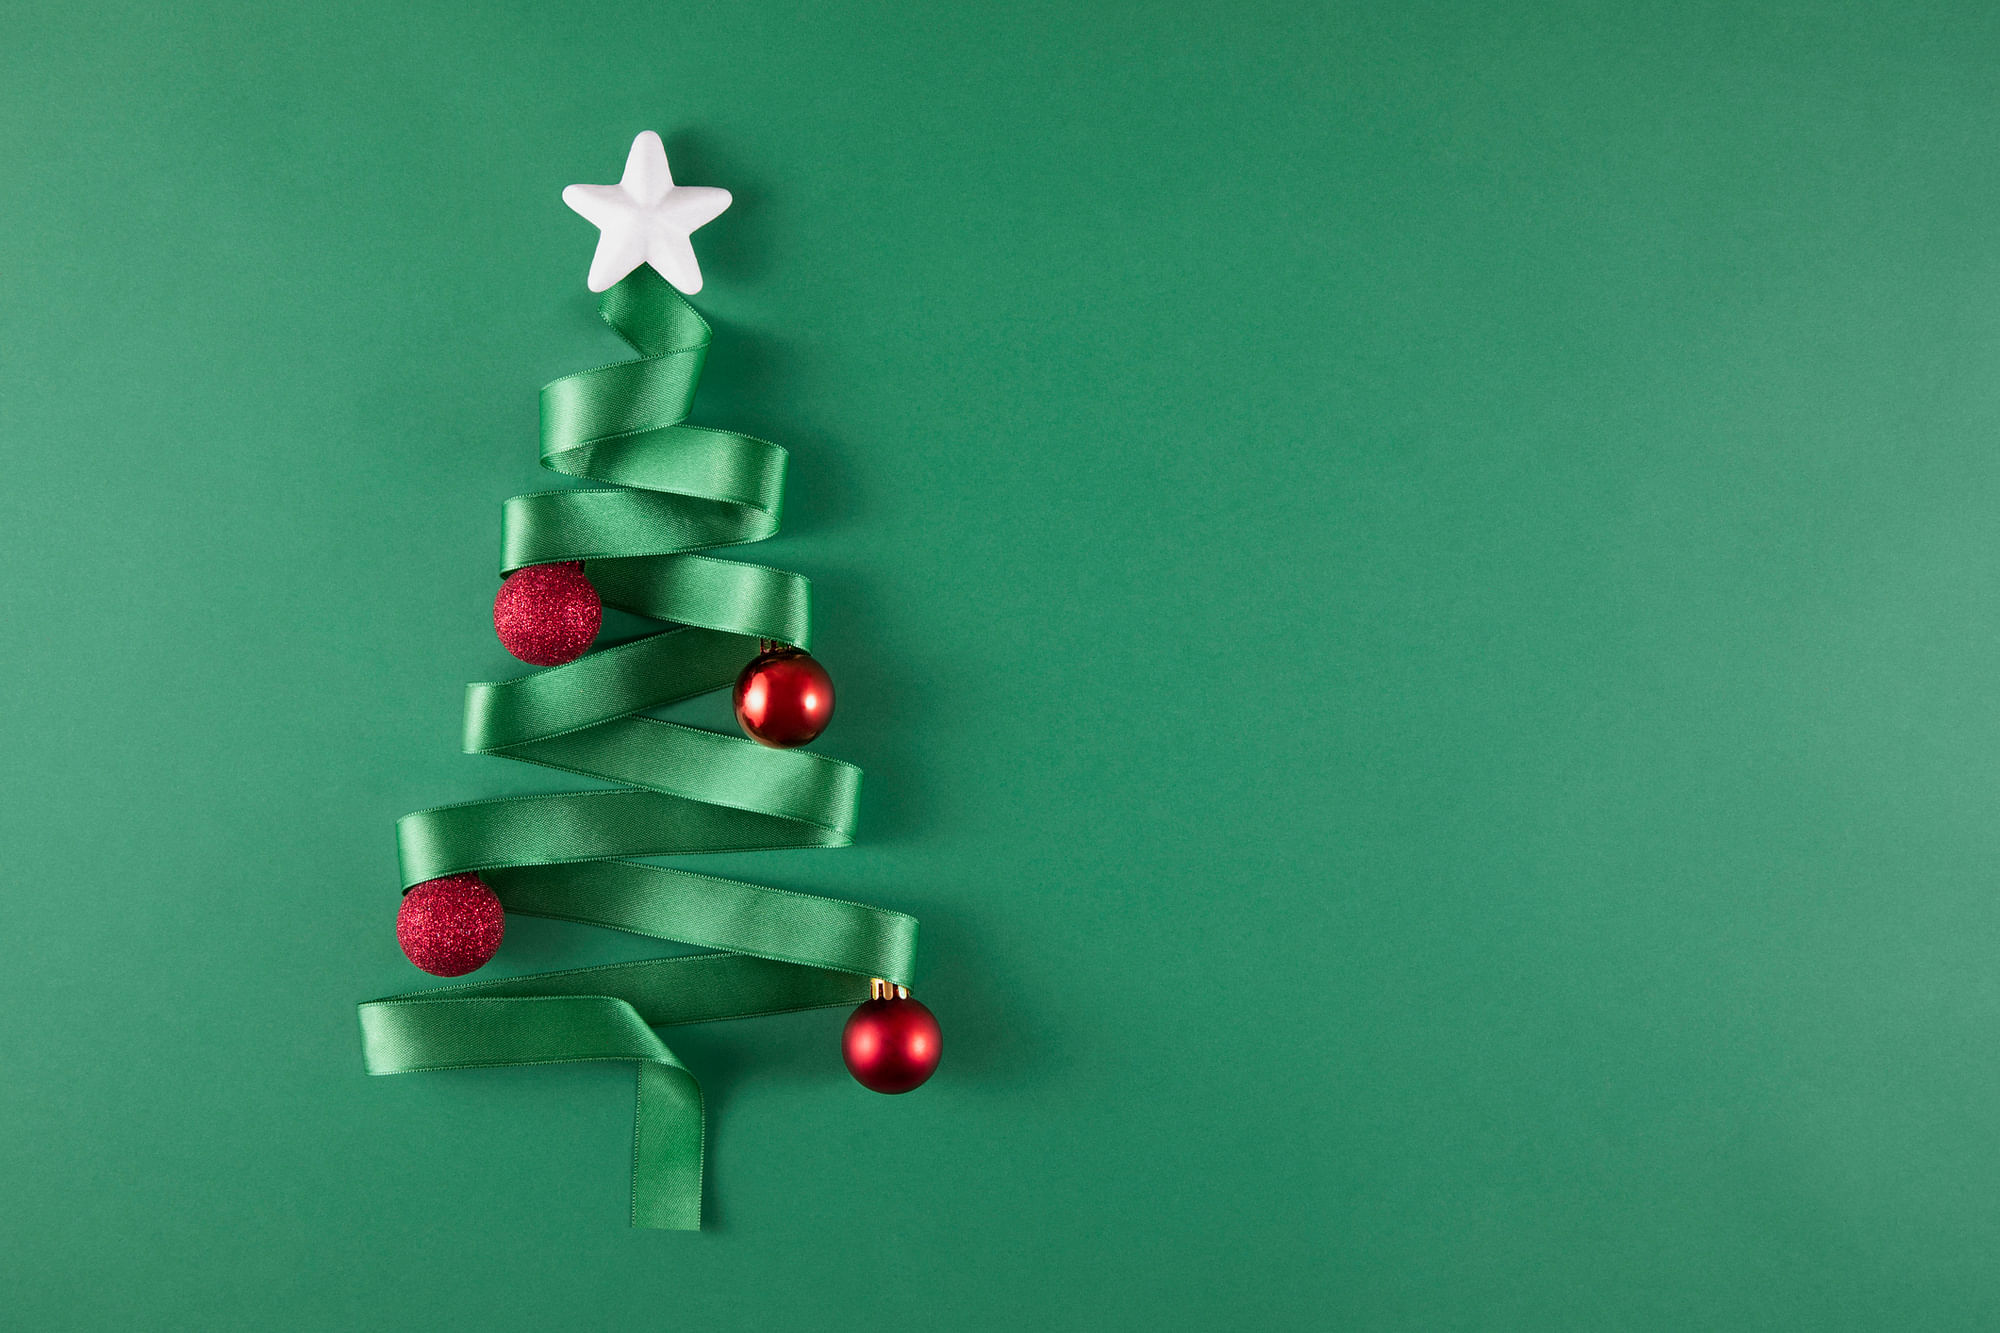 <div class="paragraphs"><p>10 beautiful Christmas tree decoration Ideas for Christmas 2021</p></div>